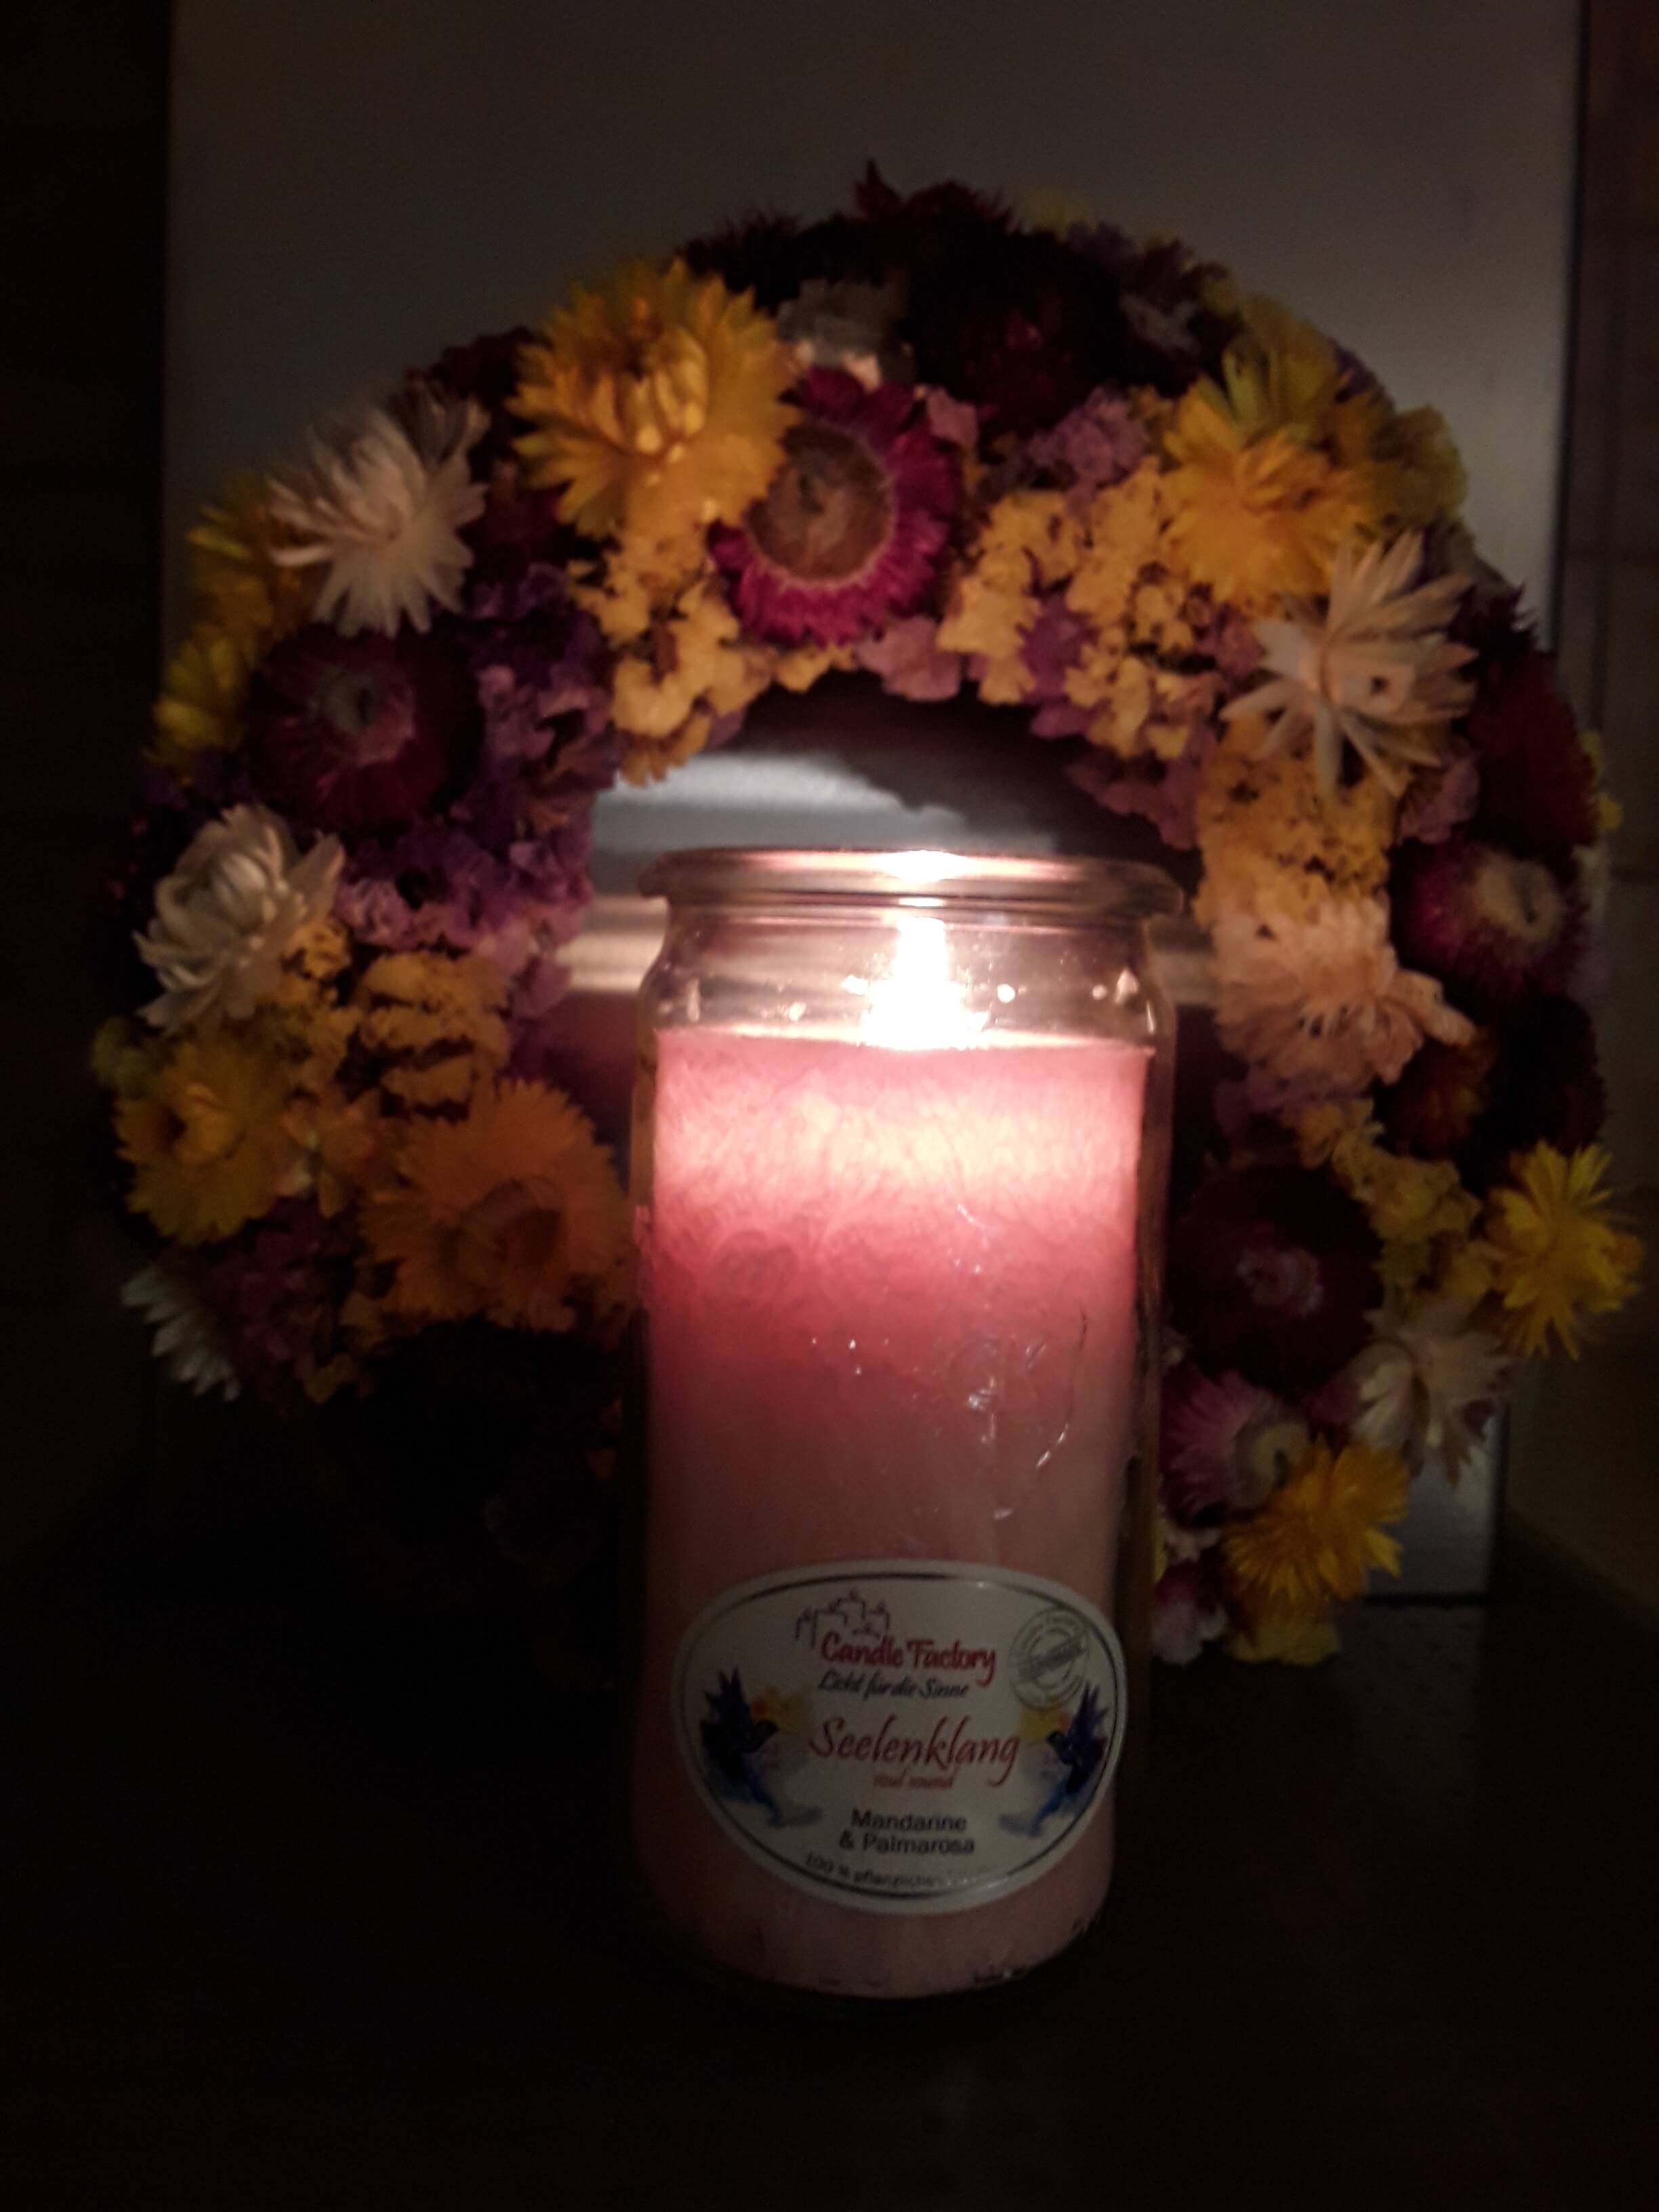 Brennende Kerze vor einem Blumenkranz, der aufrecht an der Wand lehnt